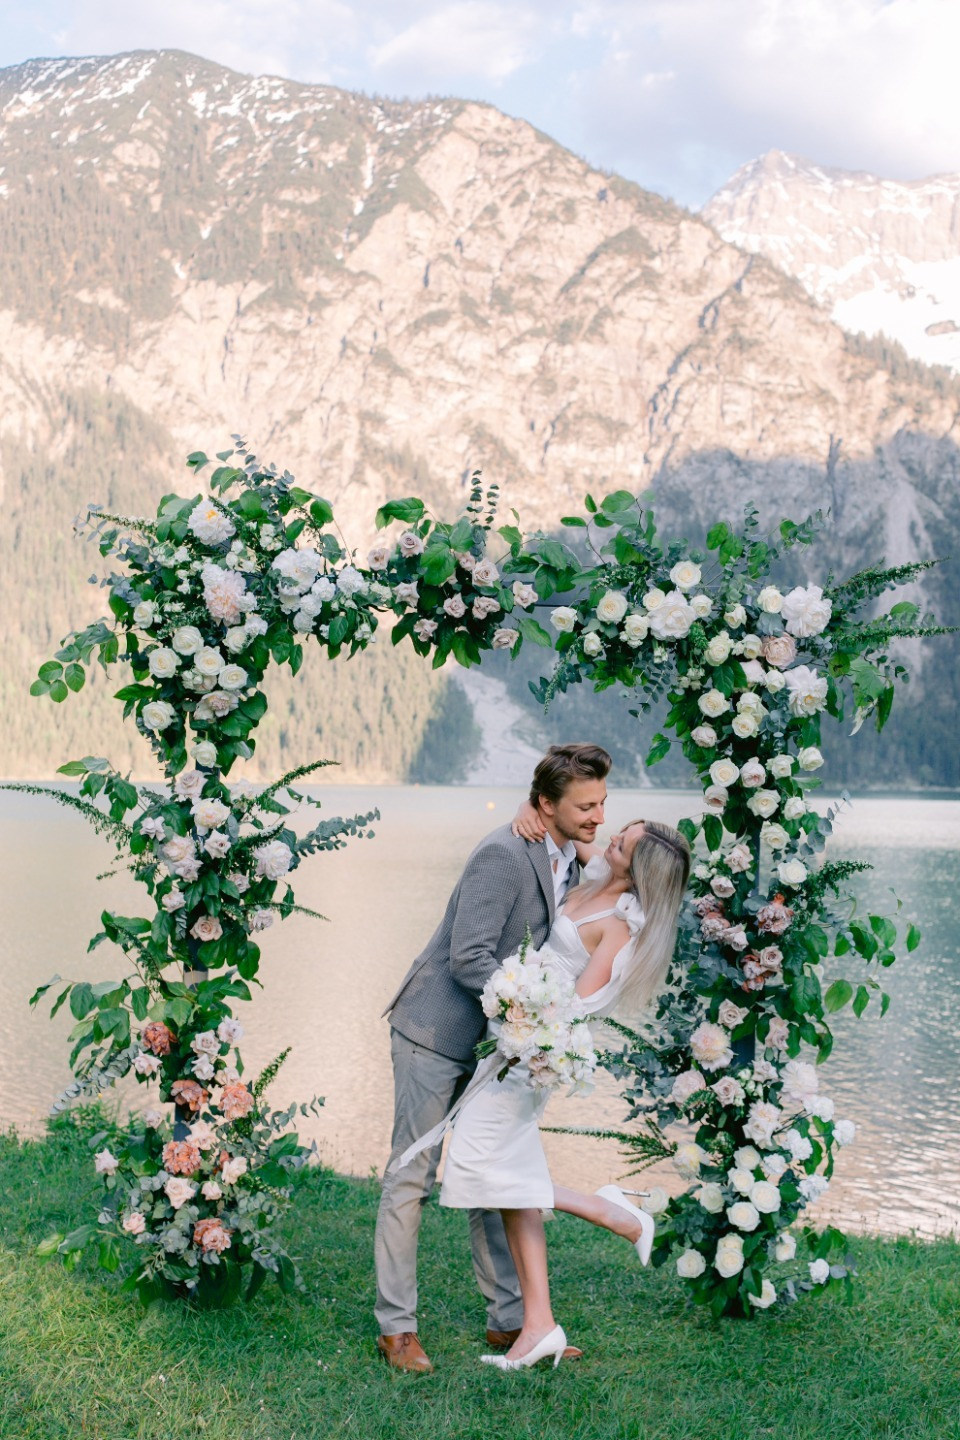 ФОТО ИЗ СТАТЬИ: Любовь в Австрии: нежная свадьба на озере